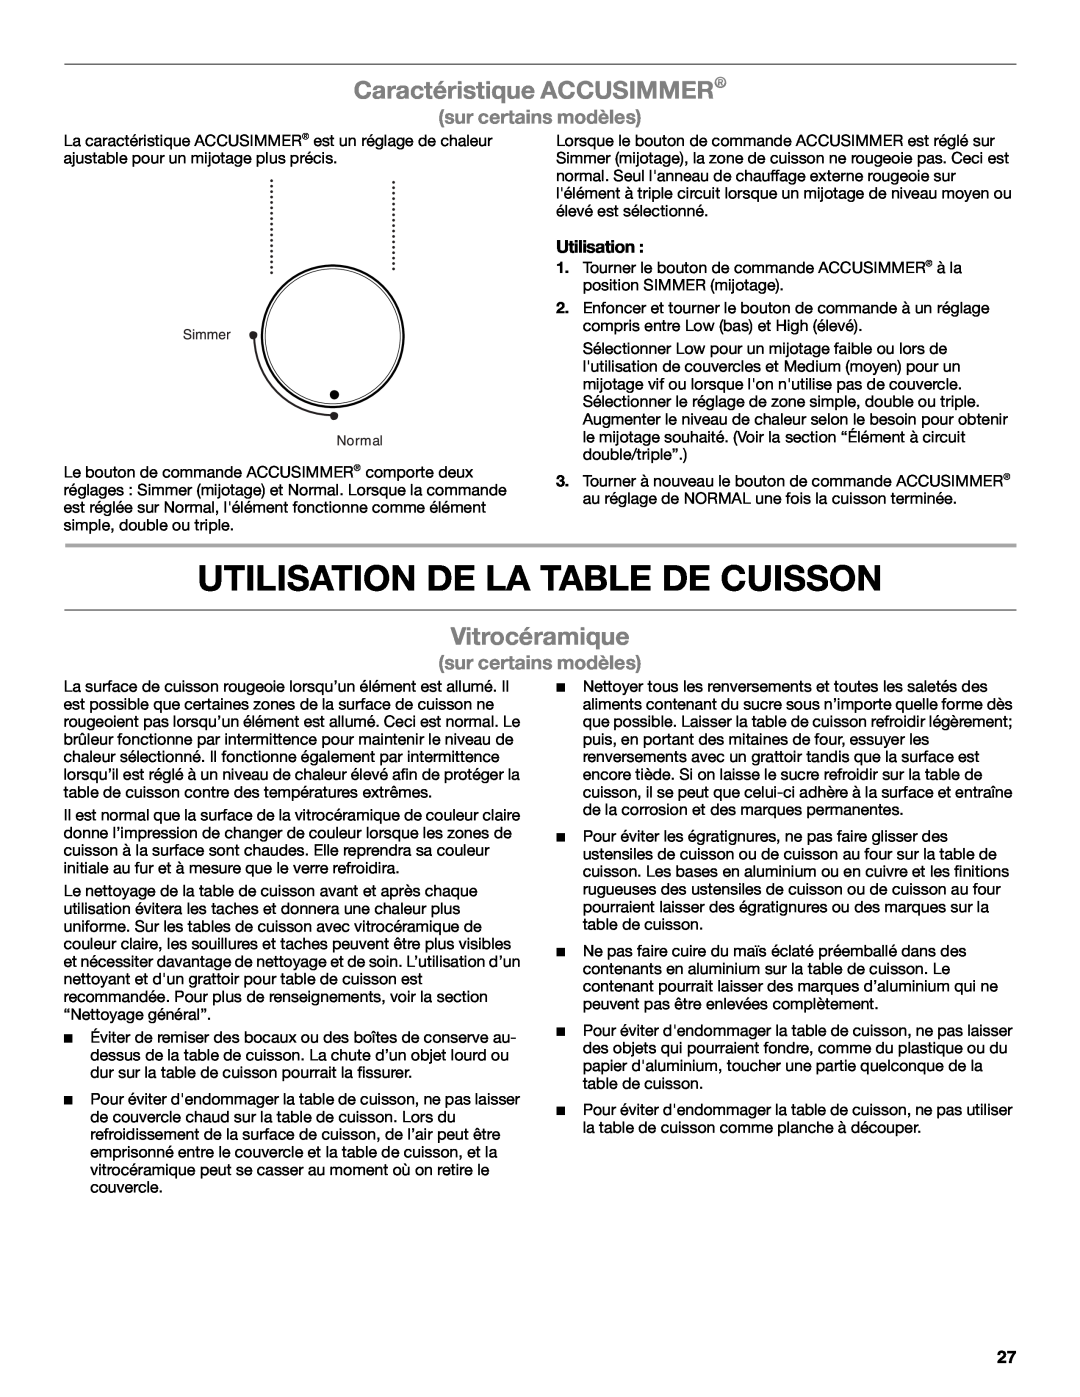 Whirlpool G7CE3034XB Utilisation De La Table De Cuisson, Caractéristique ACCUSIMMER, Vitrocéramique, sur certains modèles 